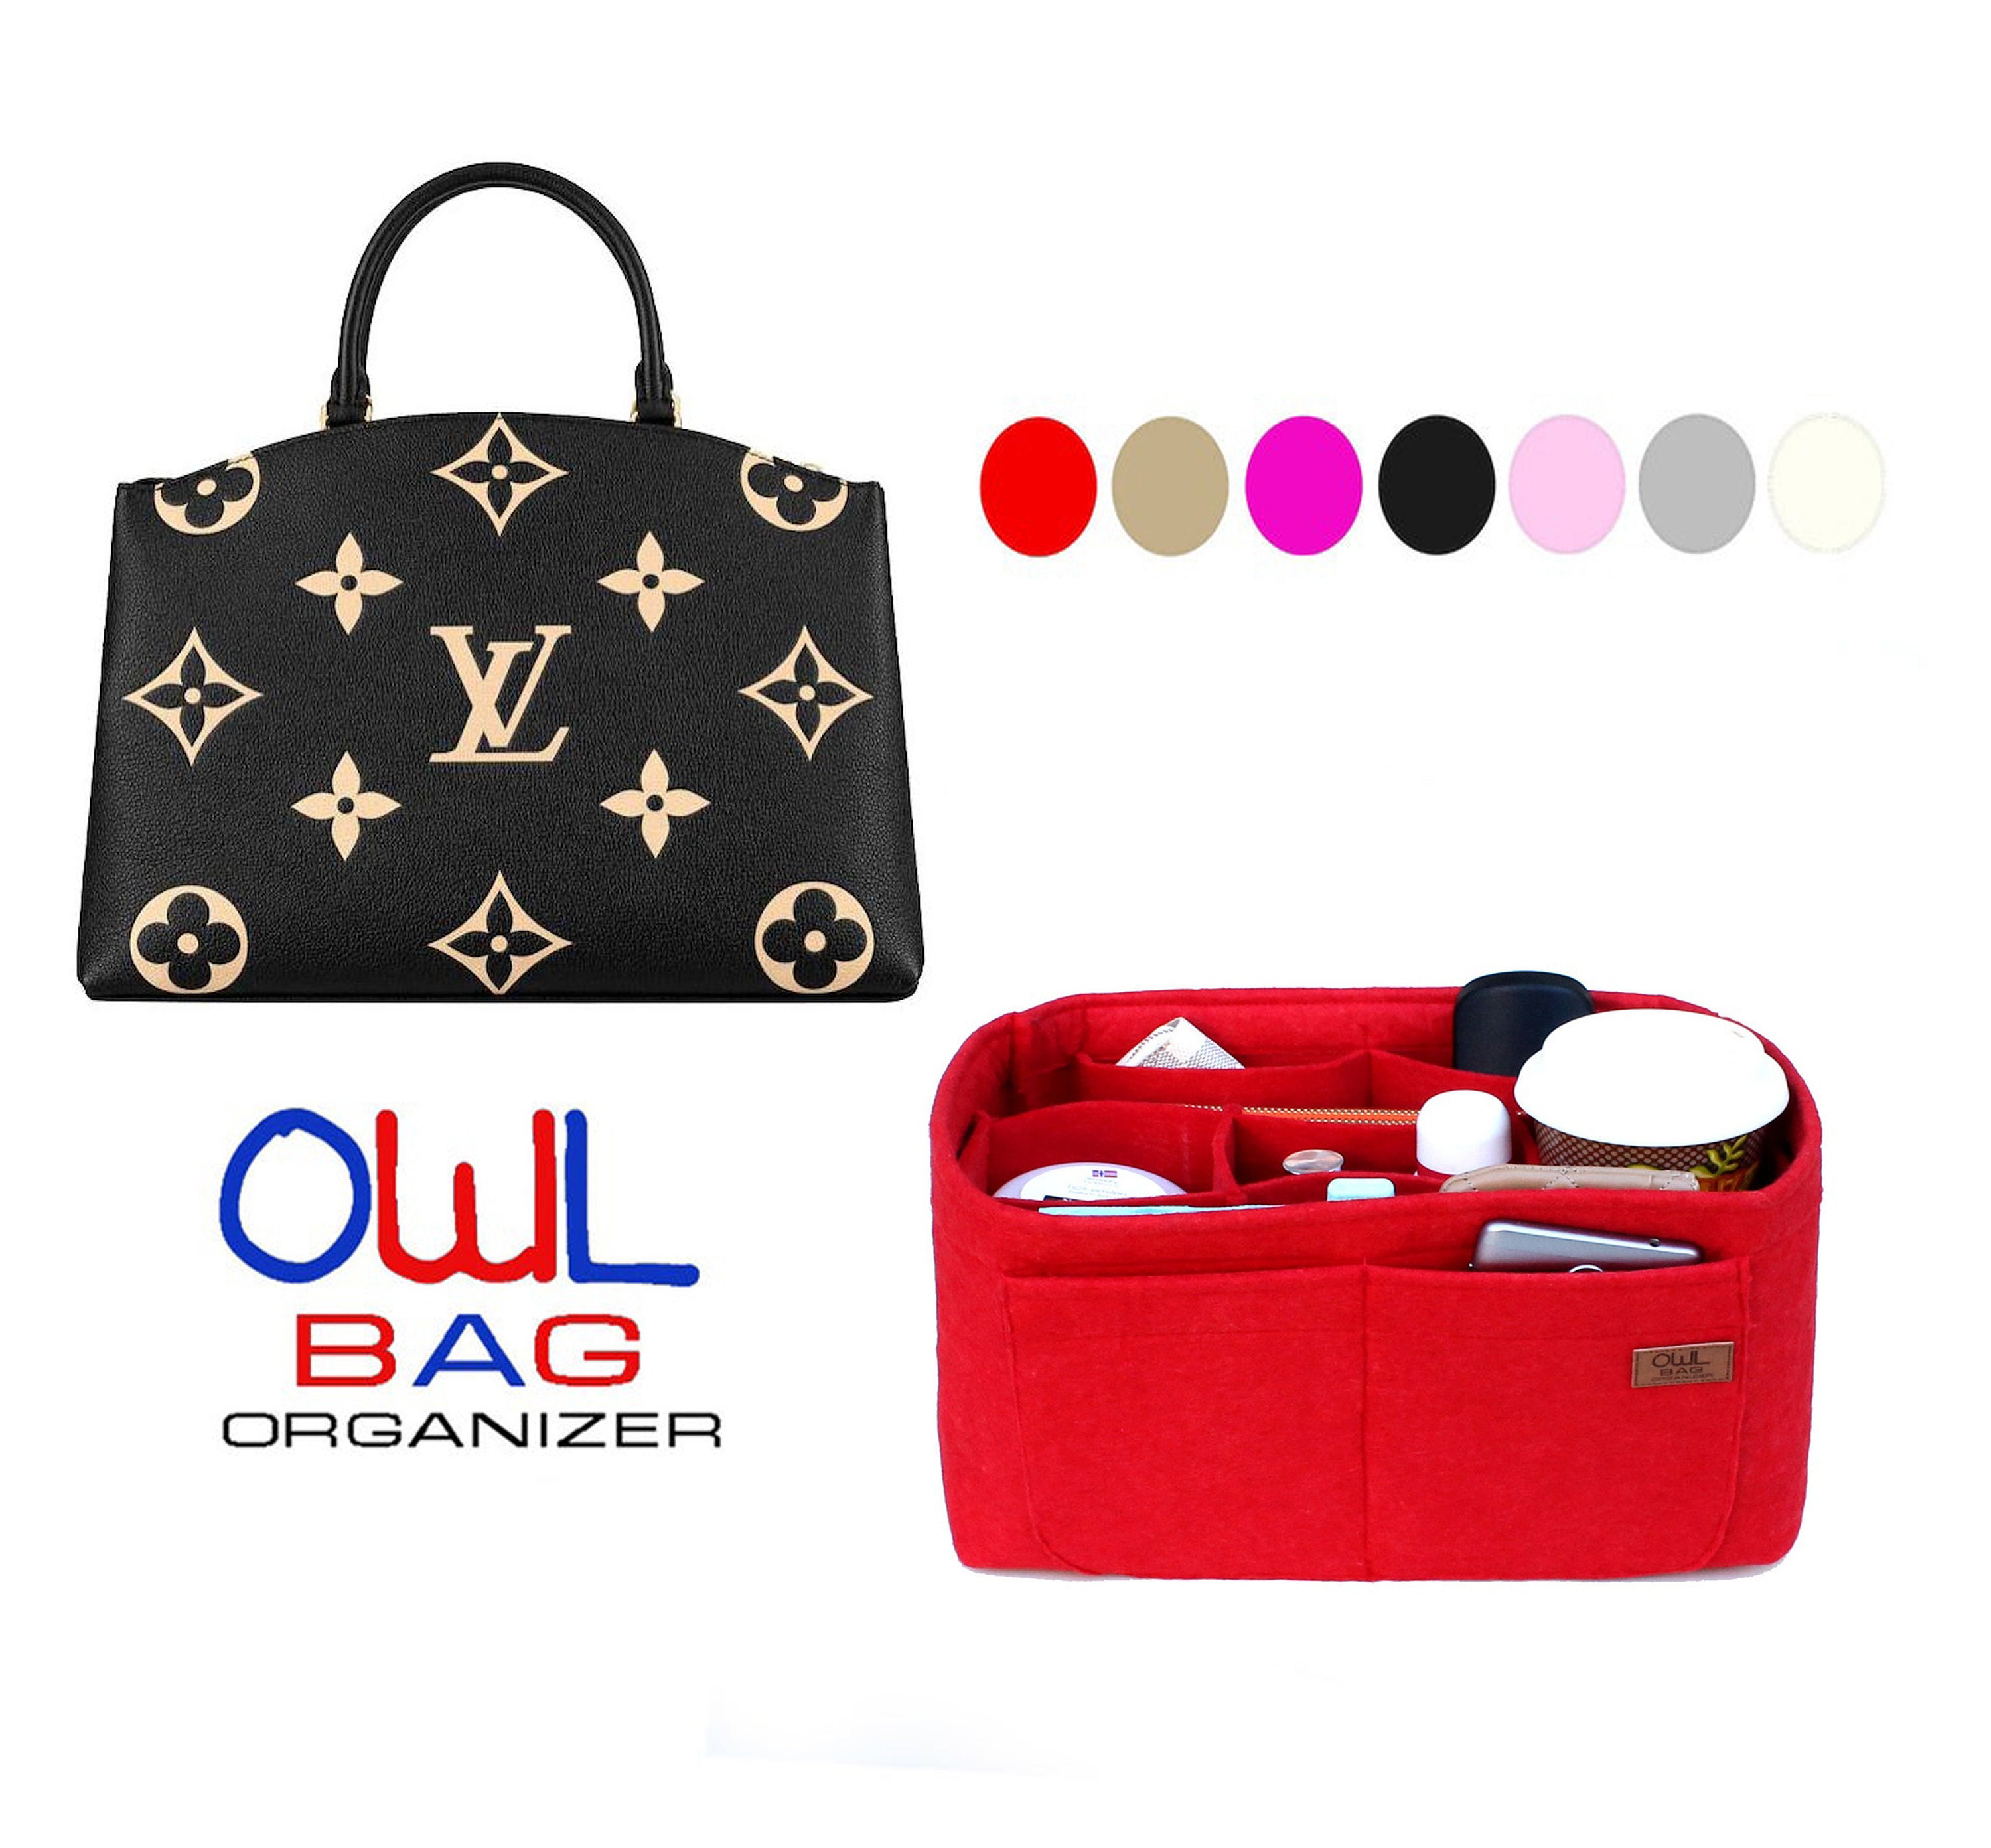 Louis Vuitton Speedy 22 Bag Organizer